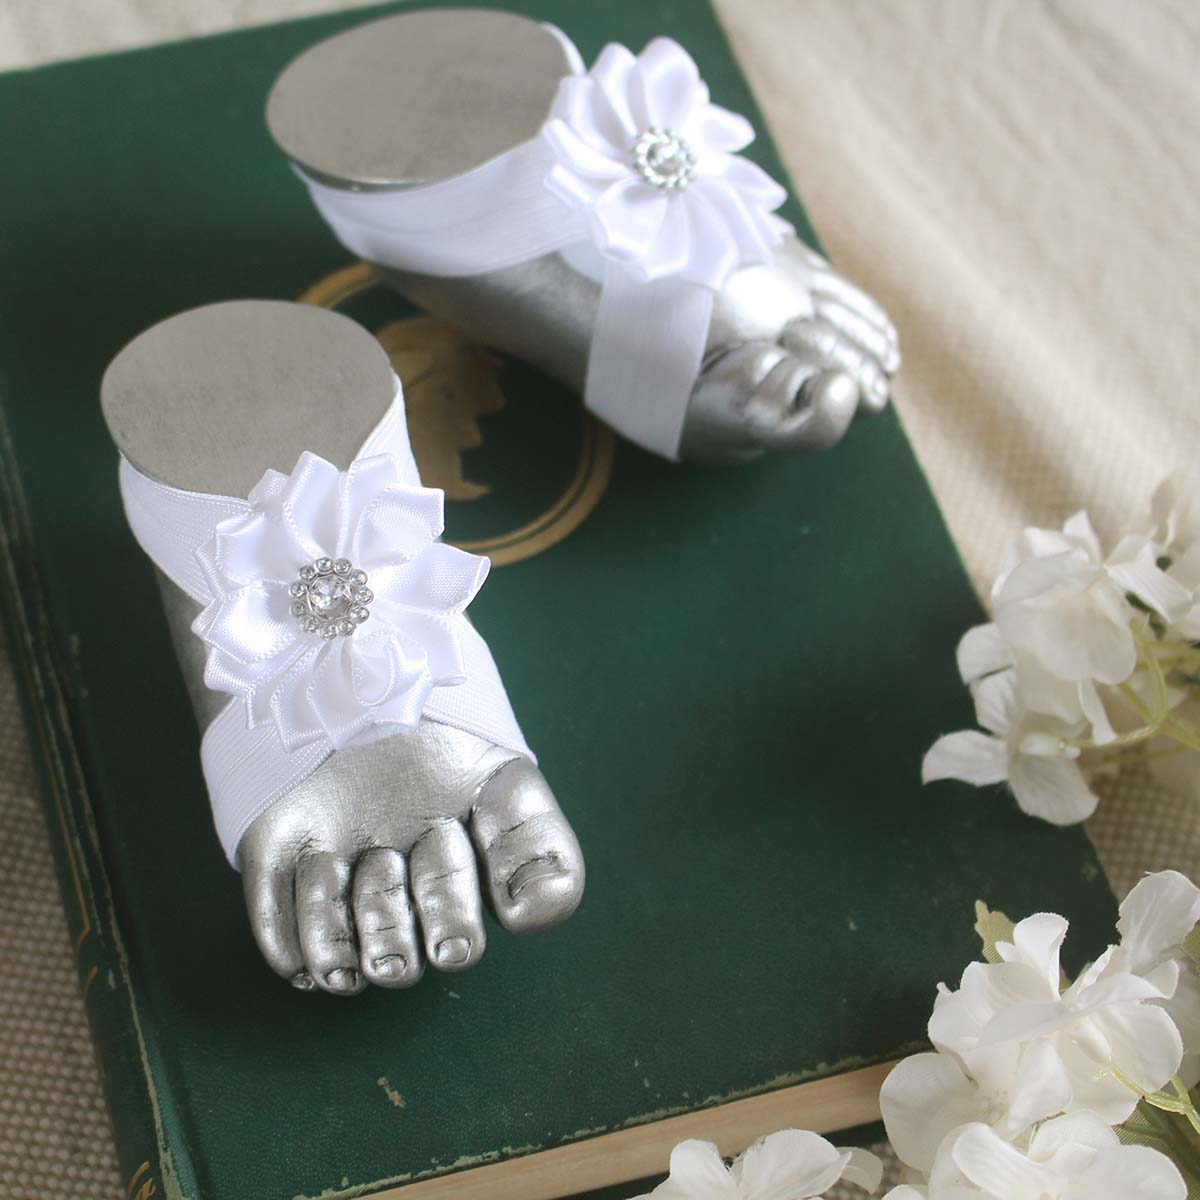 Pies descalzos con flor de pétalos y detalles plateado